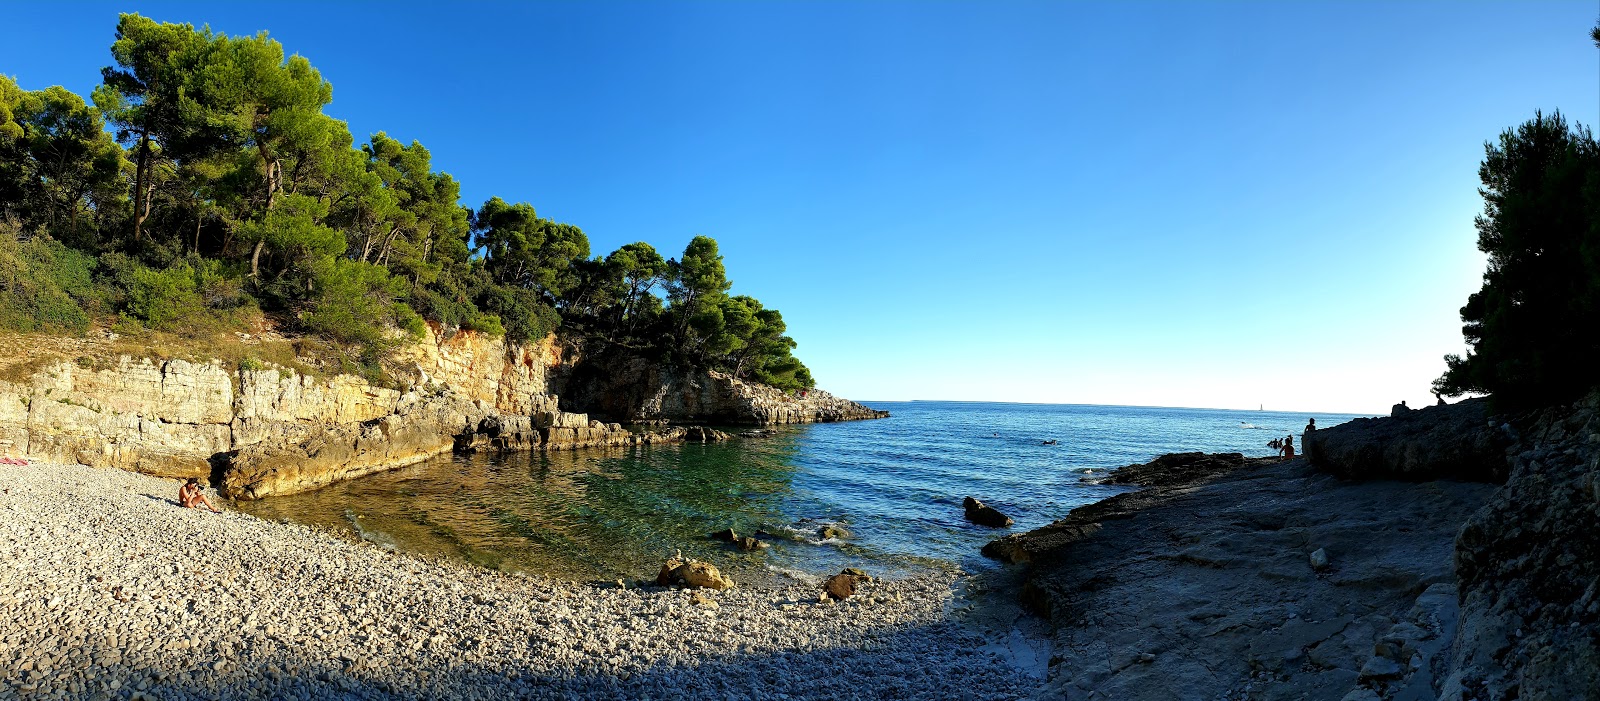 Foto av Stoja beach med stenar yta